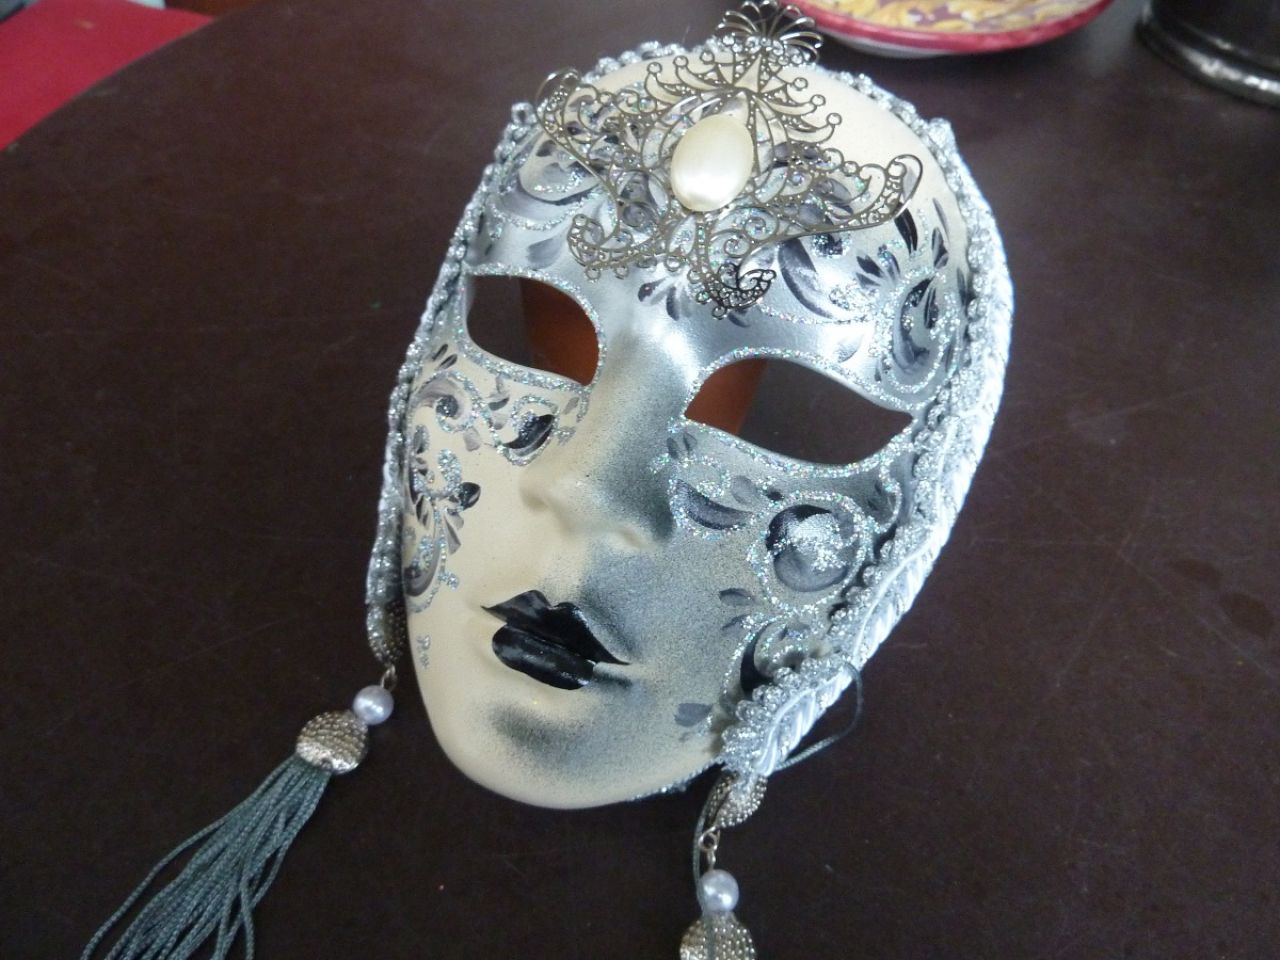 masque visage décoré à la main, couleur blanc et gris, joli bijoux sur le front, gallons et pampilles gris